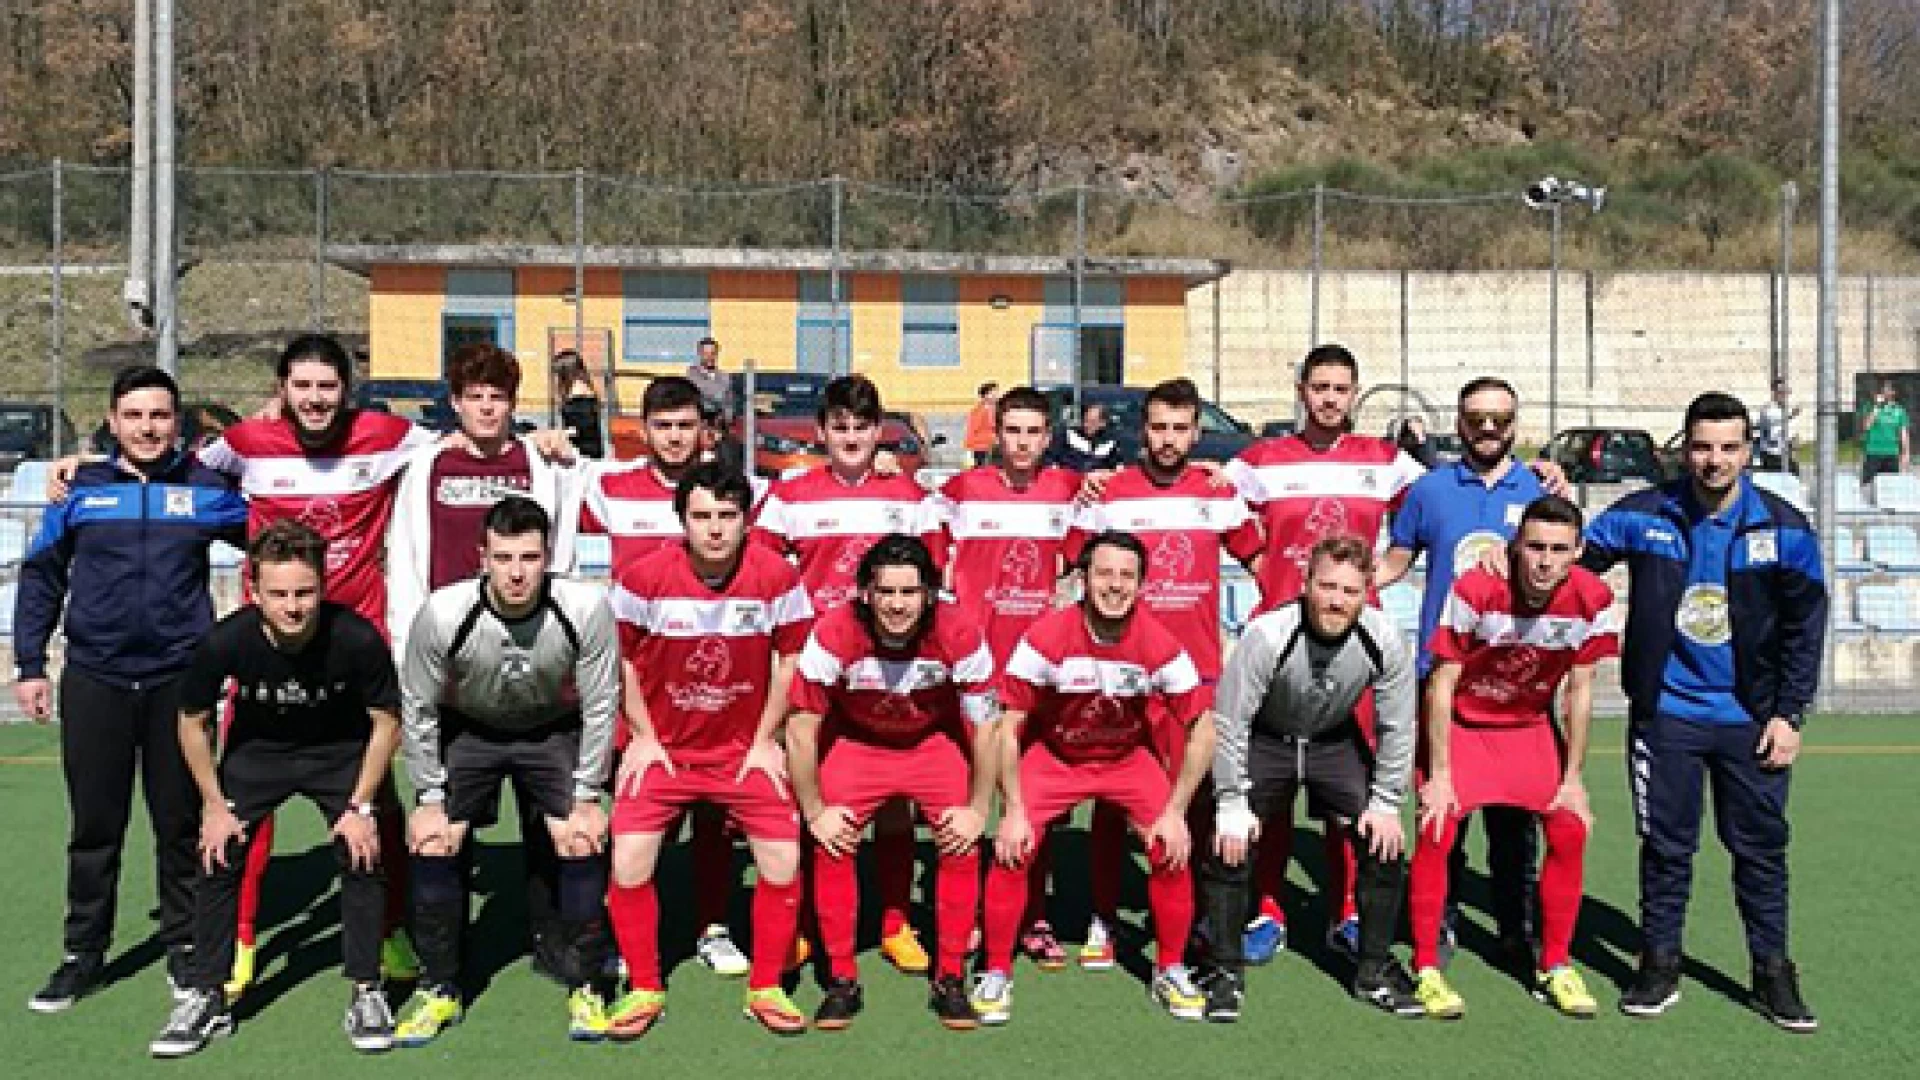 Calcio a 5: al via l’avventura dei play-off per la Futsal Colli. Nel pomeriggio la gara secca casalinga contro il Castel Del Giudice.